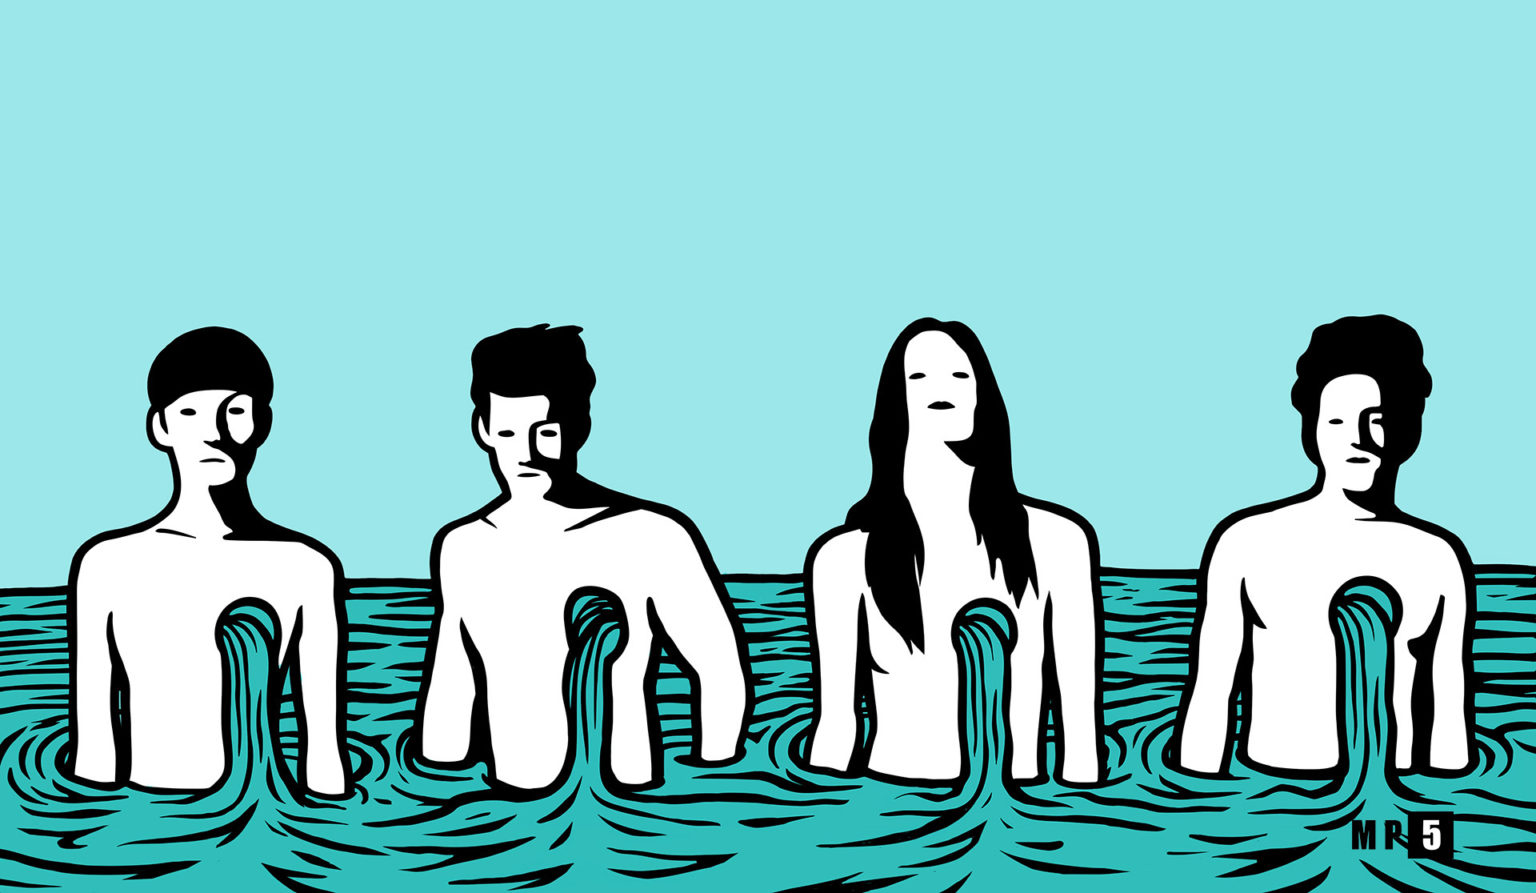 Tableau de MP5 qui s'appelle EVERYDROP et qui présente 4 personnes dans l'eau jusqu'à la taille. De l'eau sort et coule de leur poitrine. Les couleurs de l'illustration sont bleu, noir et blanc. mpcinque.com